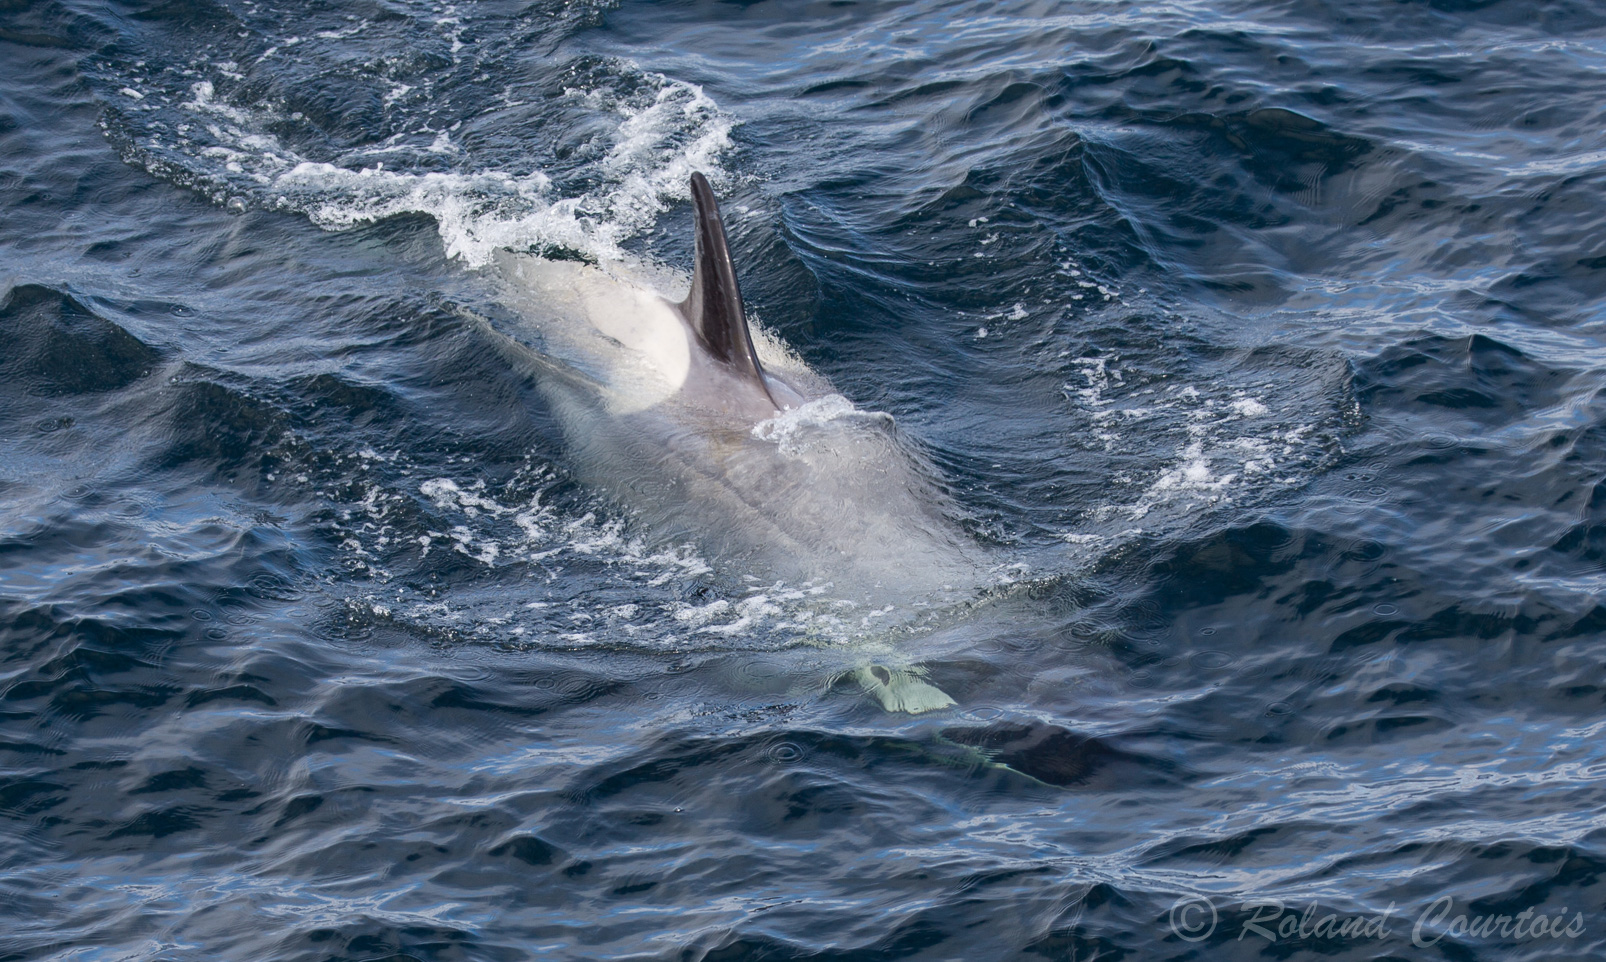 L'orque, ou épaulard, est une espèce de mammifère marin. Les mâles mesurent entre 6 et 9 m de long et pèsent entre 5 et 8 tonnes